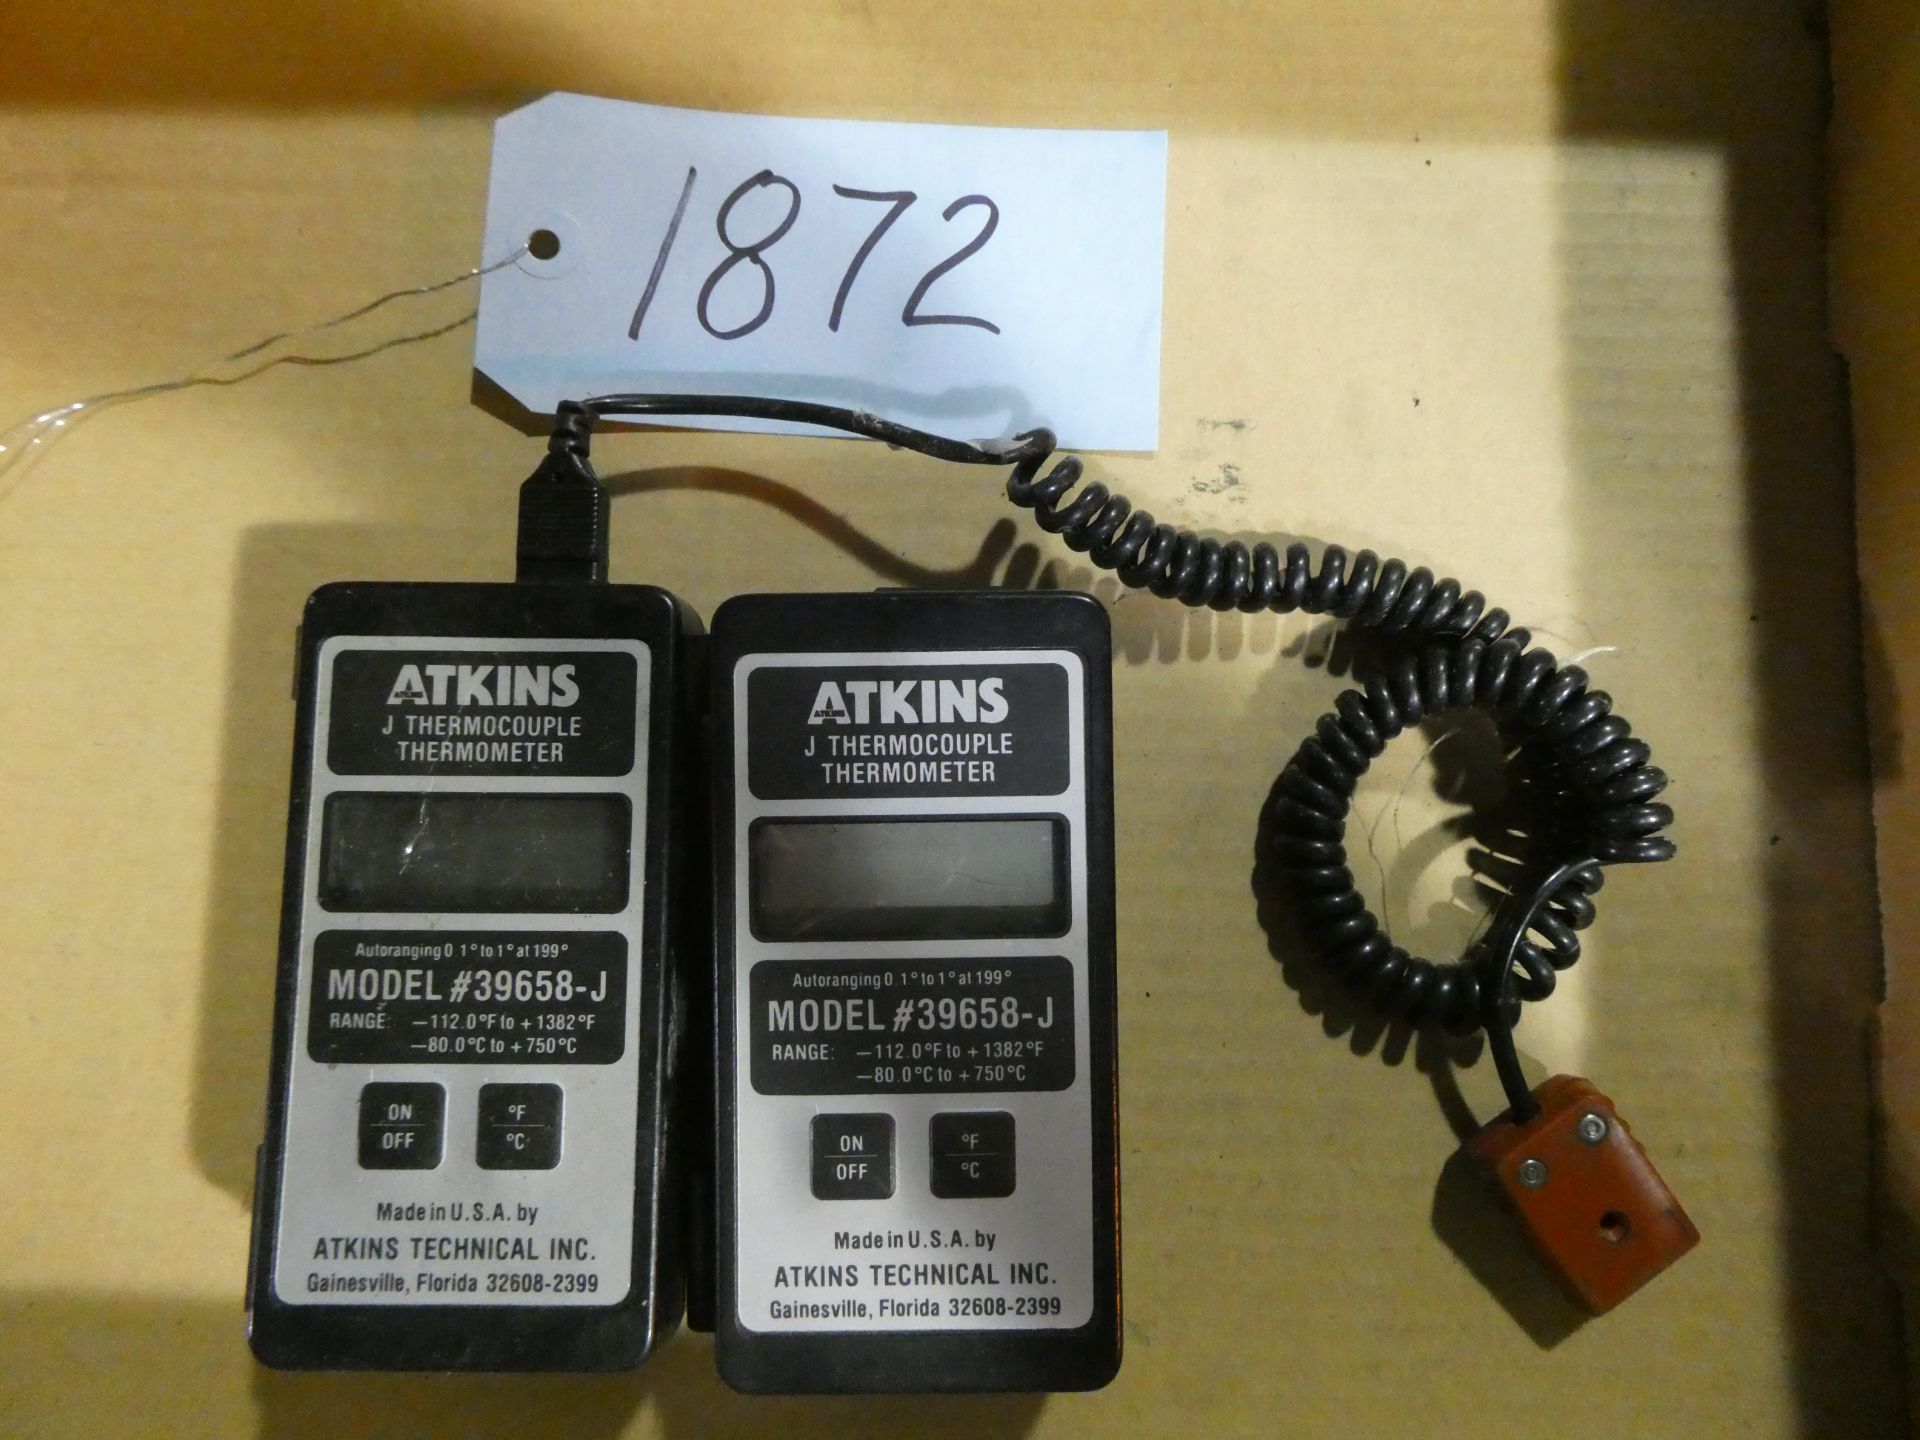 (2) Atkins "J" Thermocouple Thermometers